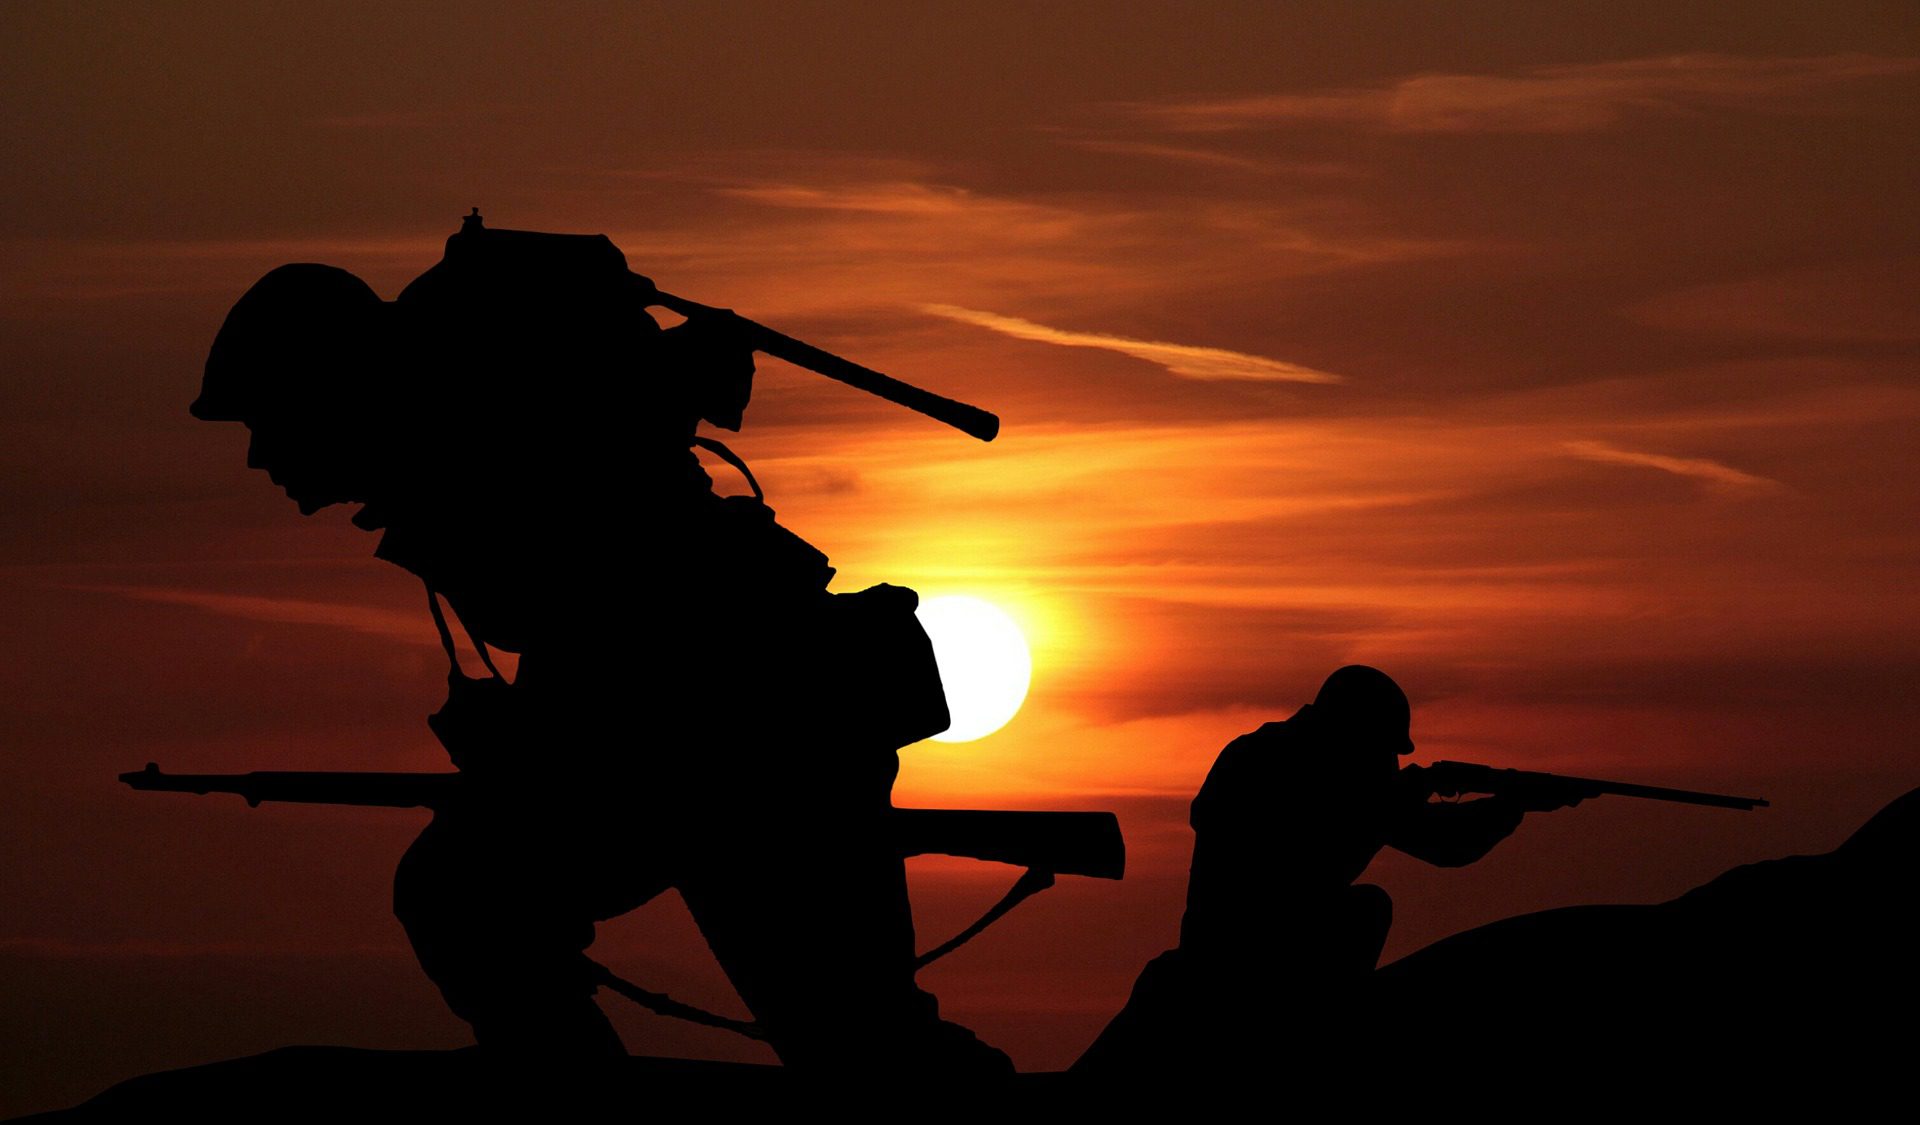 EM. ALBAY LEVENT BİLGİN'İN KEBAN GAZETESİNDEKİ SON YAZISI - sinir otesi harekat ordu asker